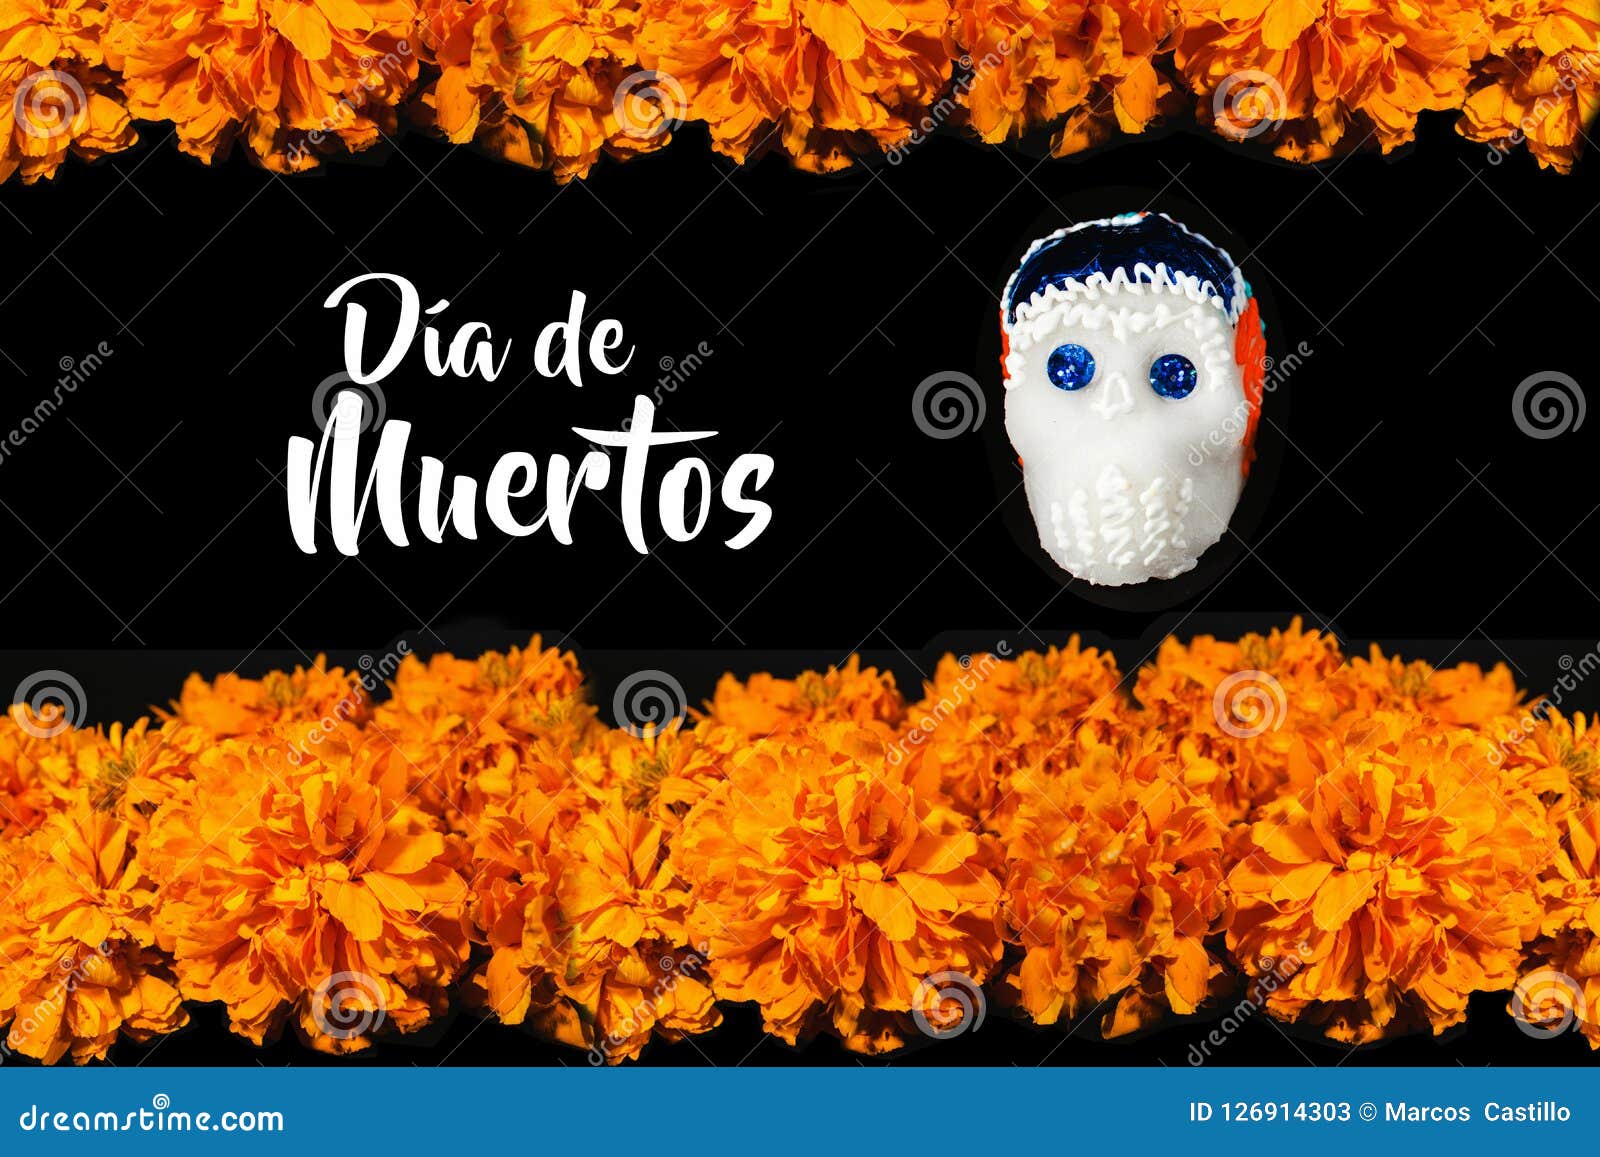 Dia De Los Muertos Flor De Cempasuchil, Day of the Dead Offering in MÃ©xico  Stock Image - Image of calaverita, cultural: 126914303